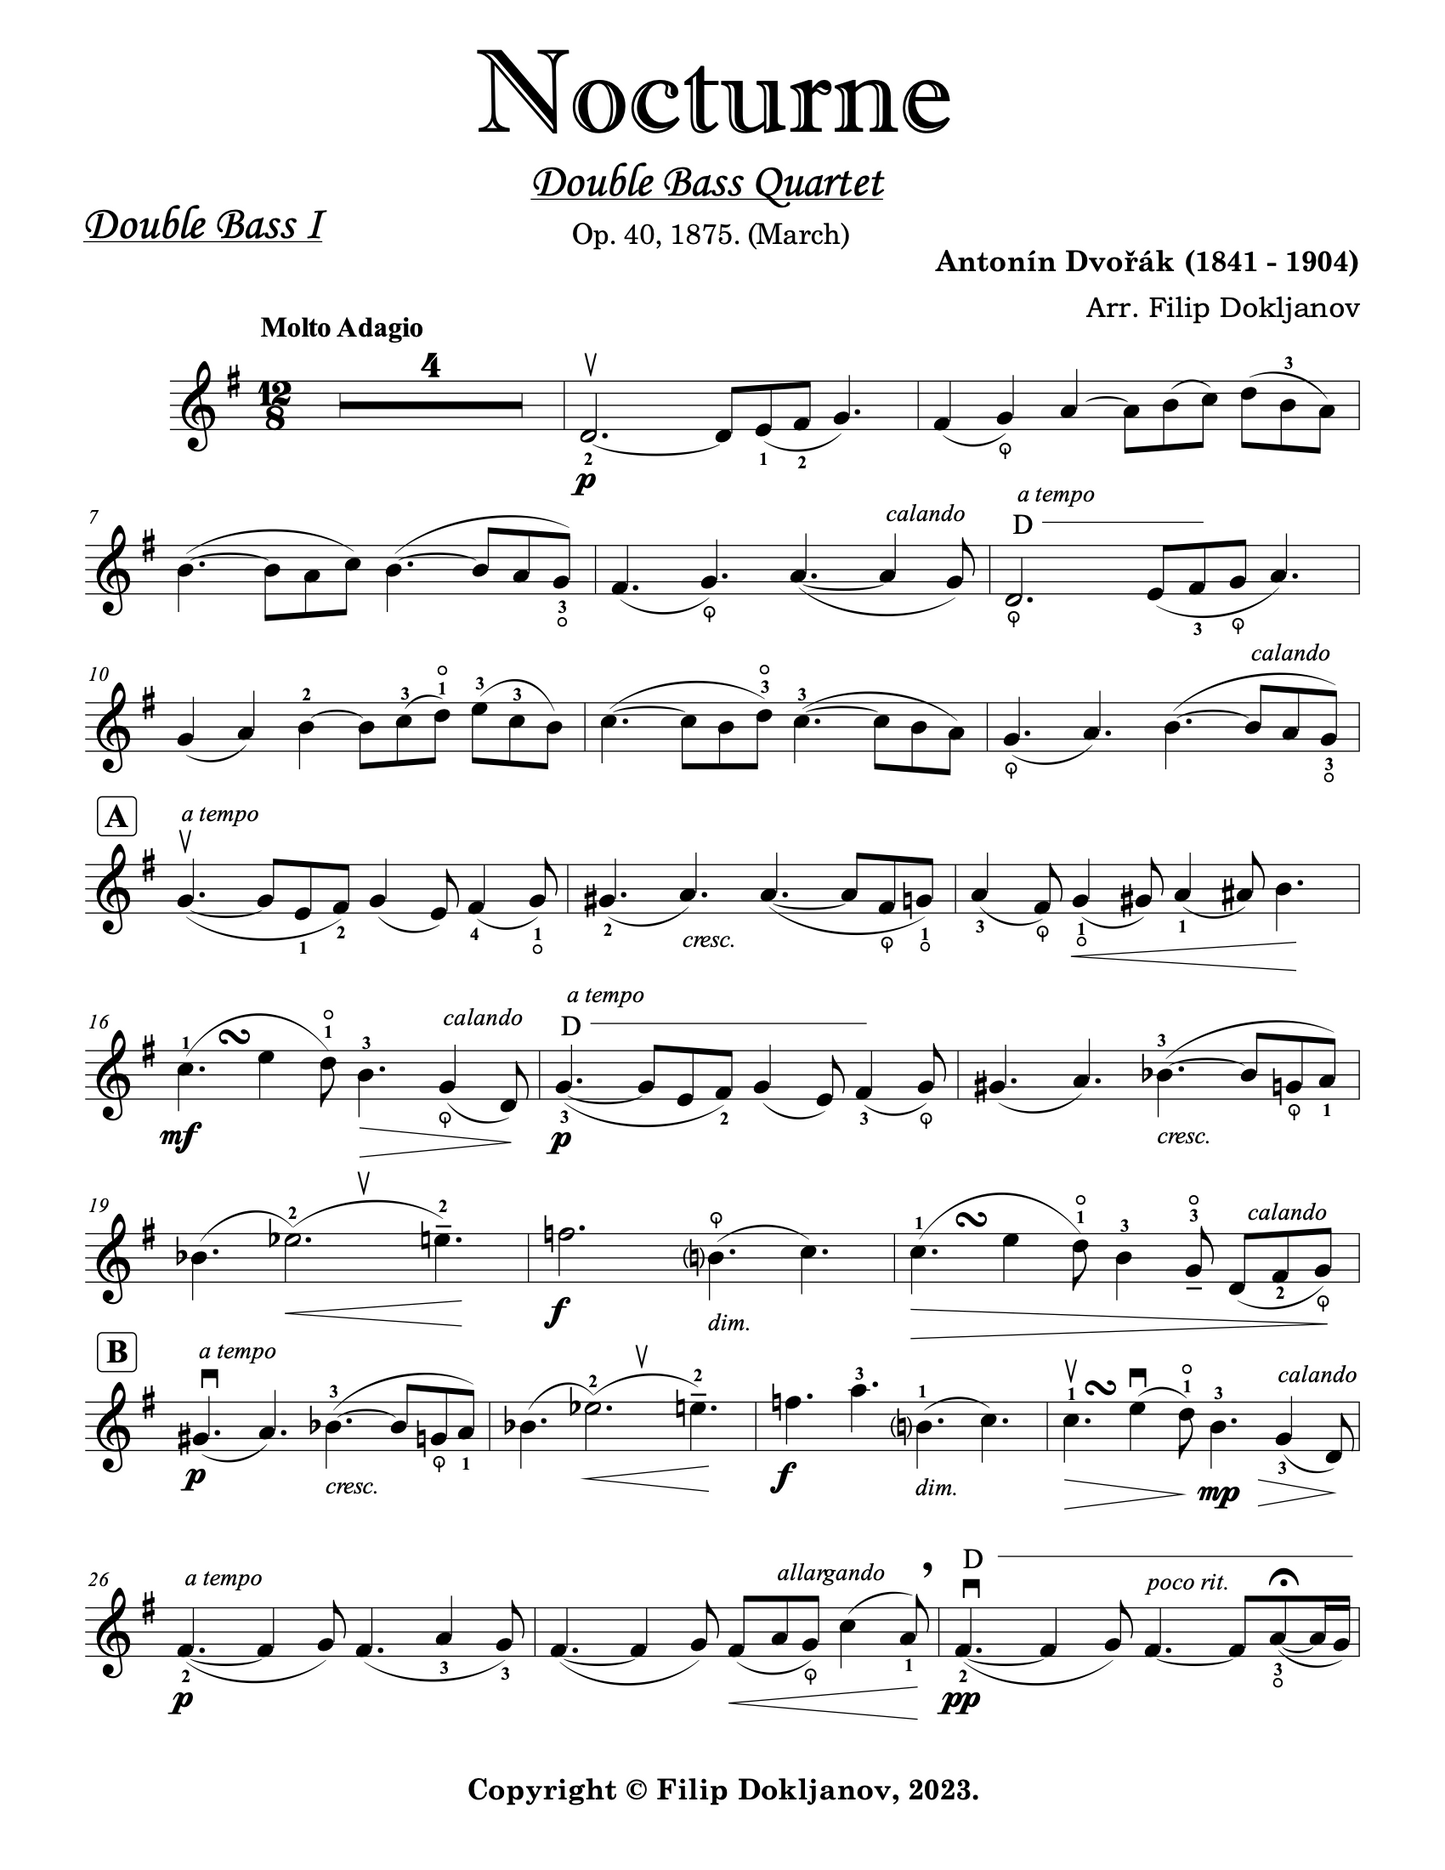 Dvořák: Nocturne in B Major Op. 40 arranged for double bass quartet (Dokljanov)